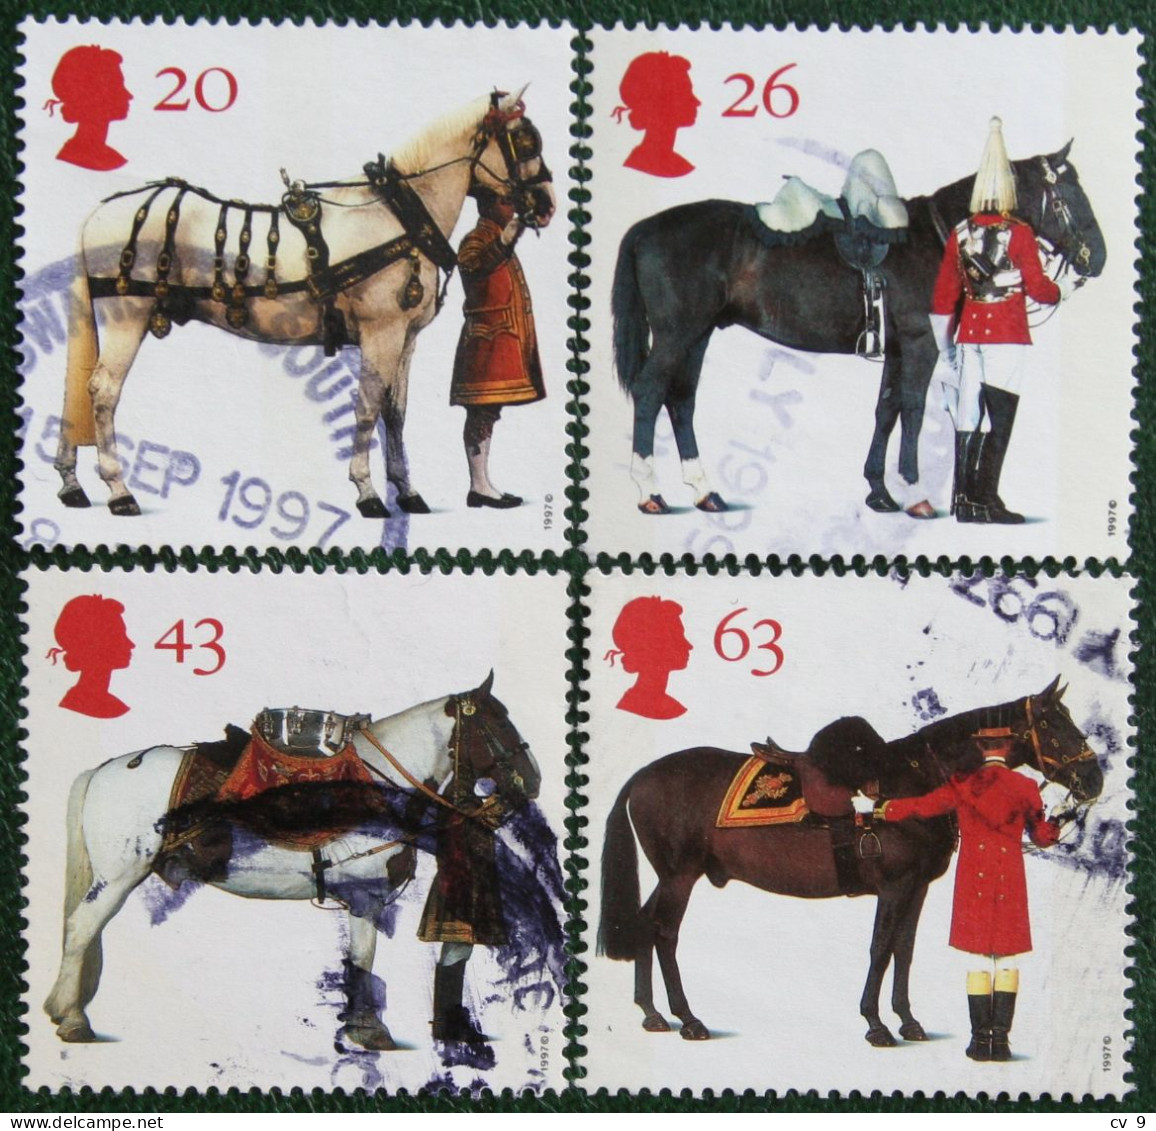 All The Queen's Horses Pferd Paard (Mi 1701-1704) 1997 Used Gebruikt Oblitere ENGLAND GRANDE-BRETAGNE GB GREAT BRITAIN - Gebruikt